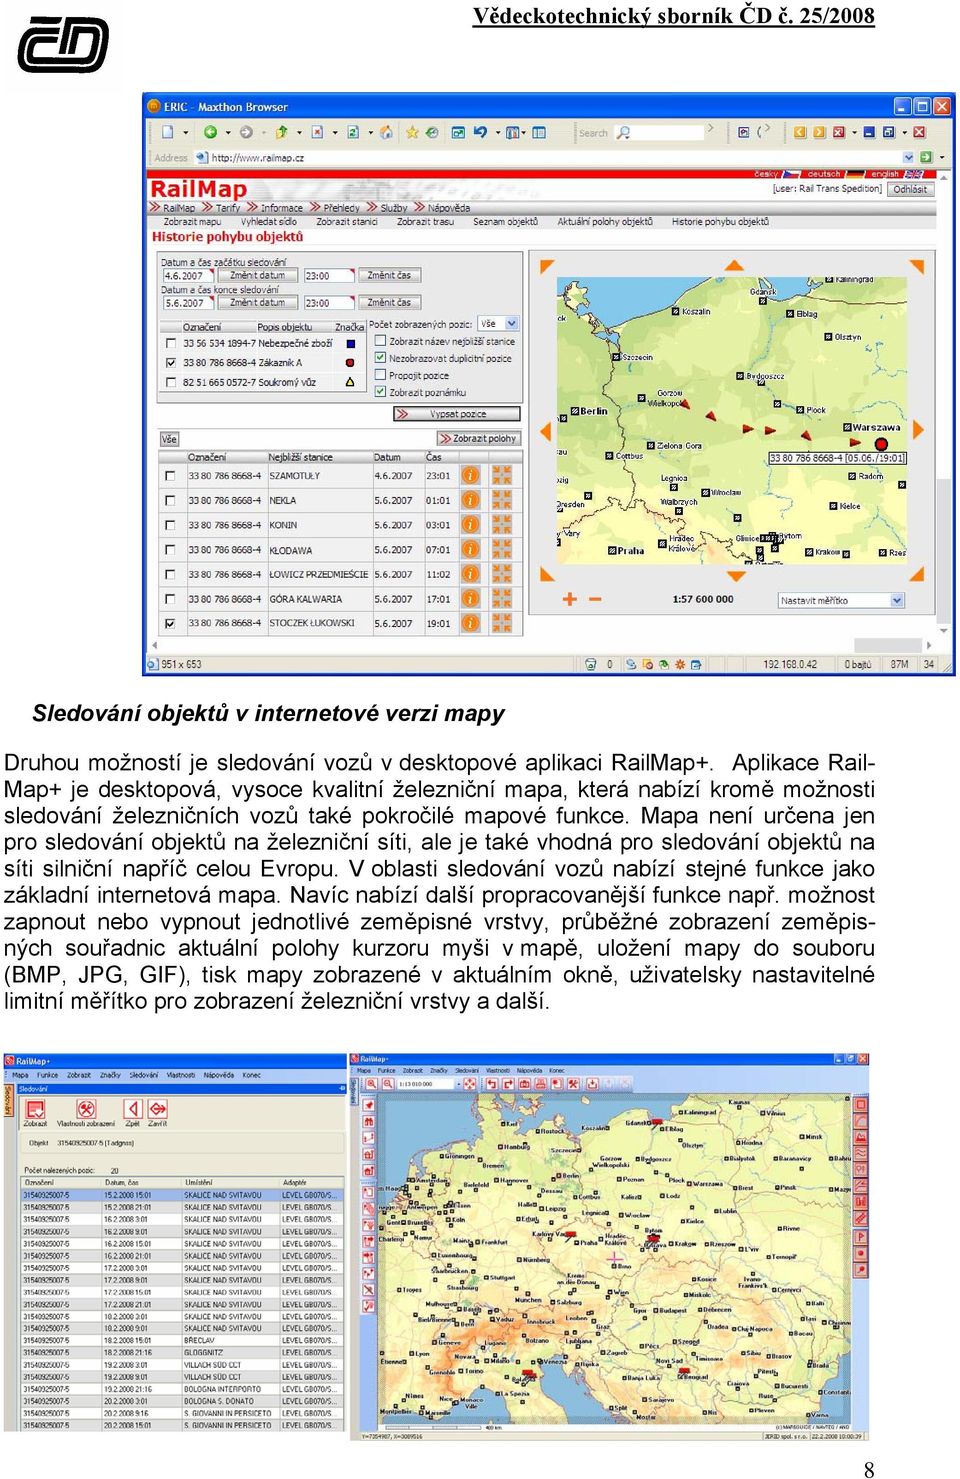 Mapa není určena jen pro sledování objektů na železniční síti, ale je také vhodná pro sledování objektů na síti silniční napříč celou Evropu.